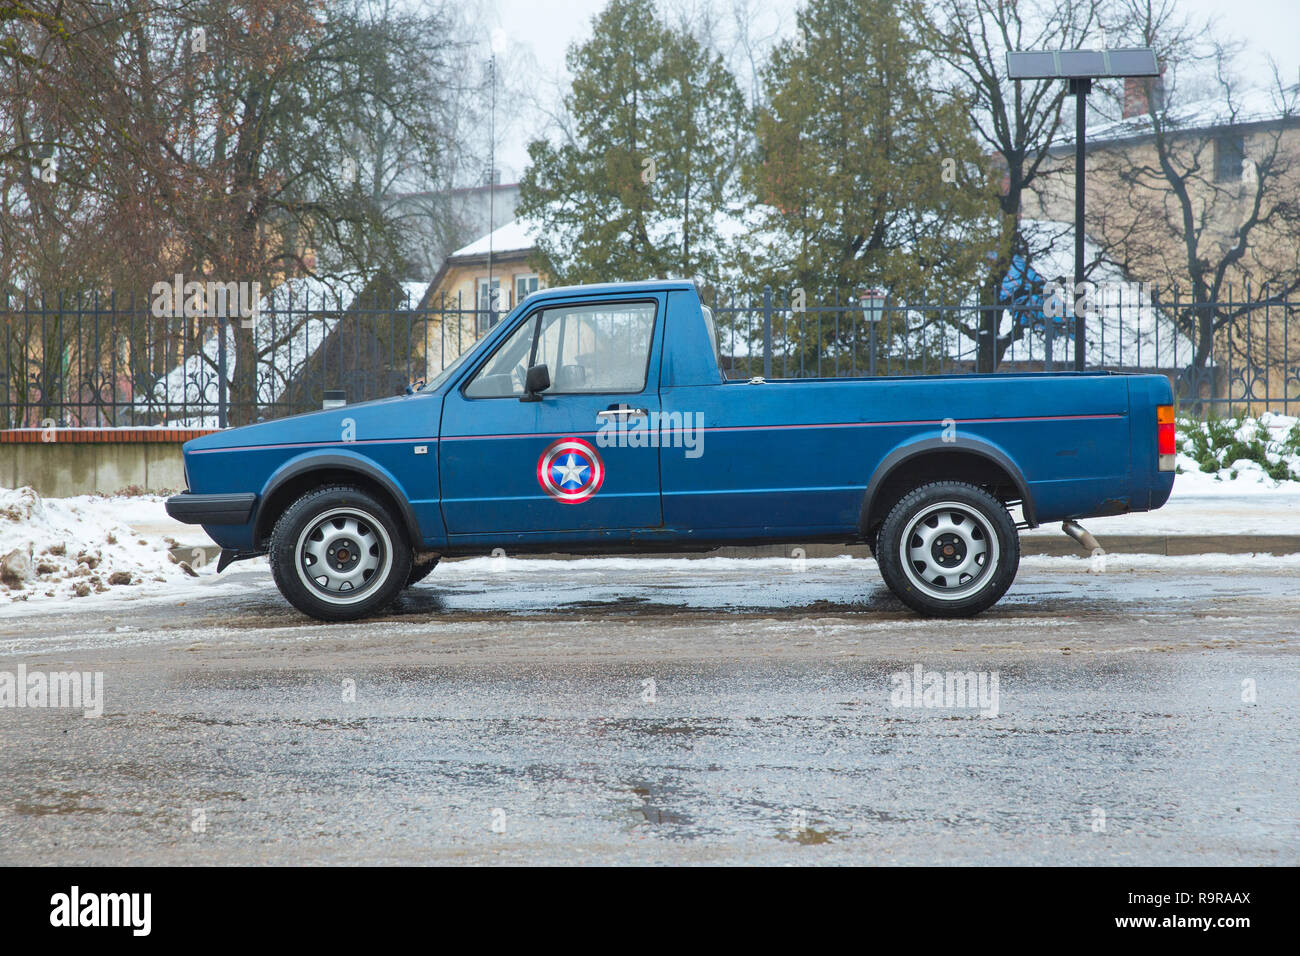 Cesis, ville de la Lettonie. Blu Retro Volkswagen Caddy MK1 à lapin, la rue. Fabriqué en Allemagne 1970. Photo de voyage urbain 2018, décembre. Banque D'Images